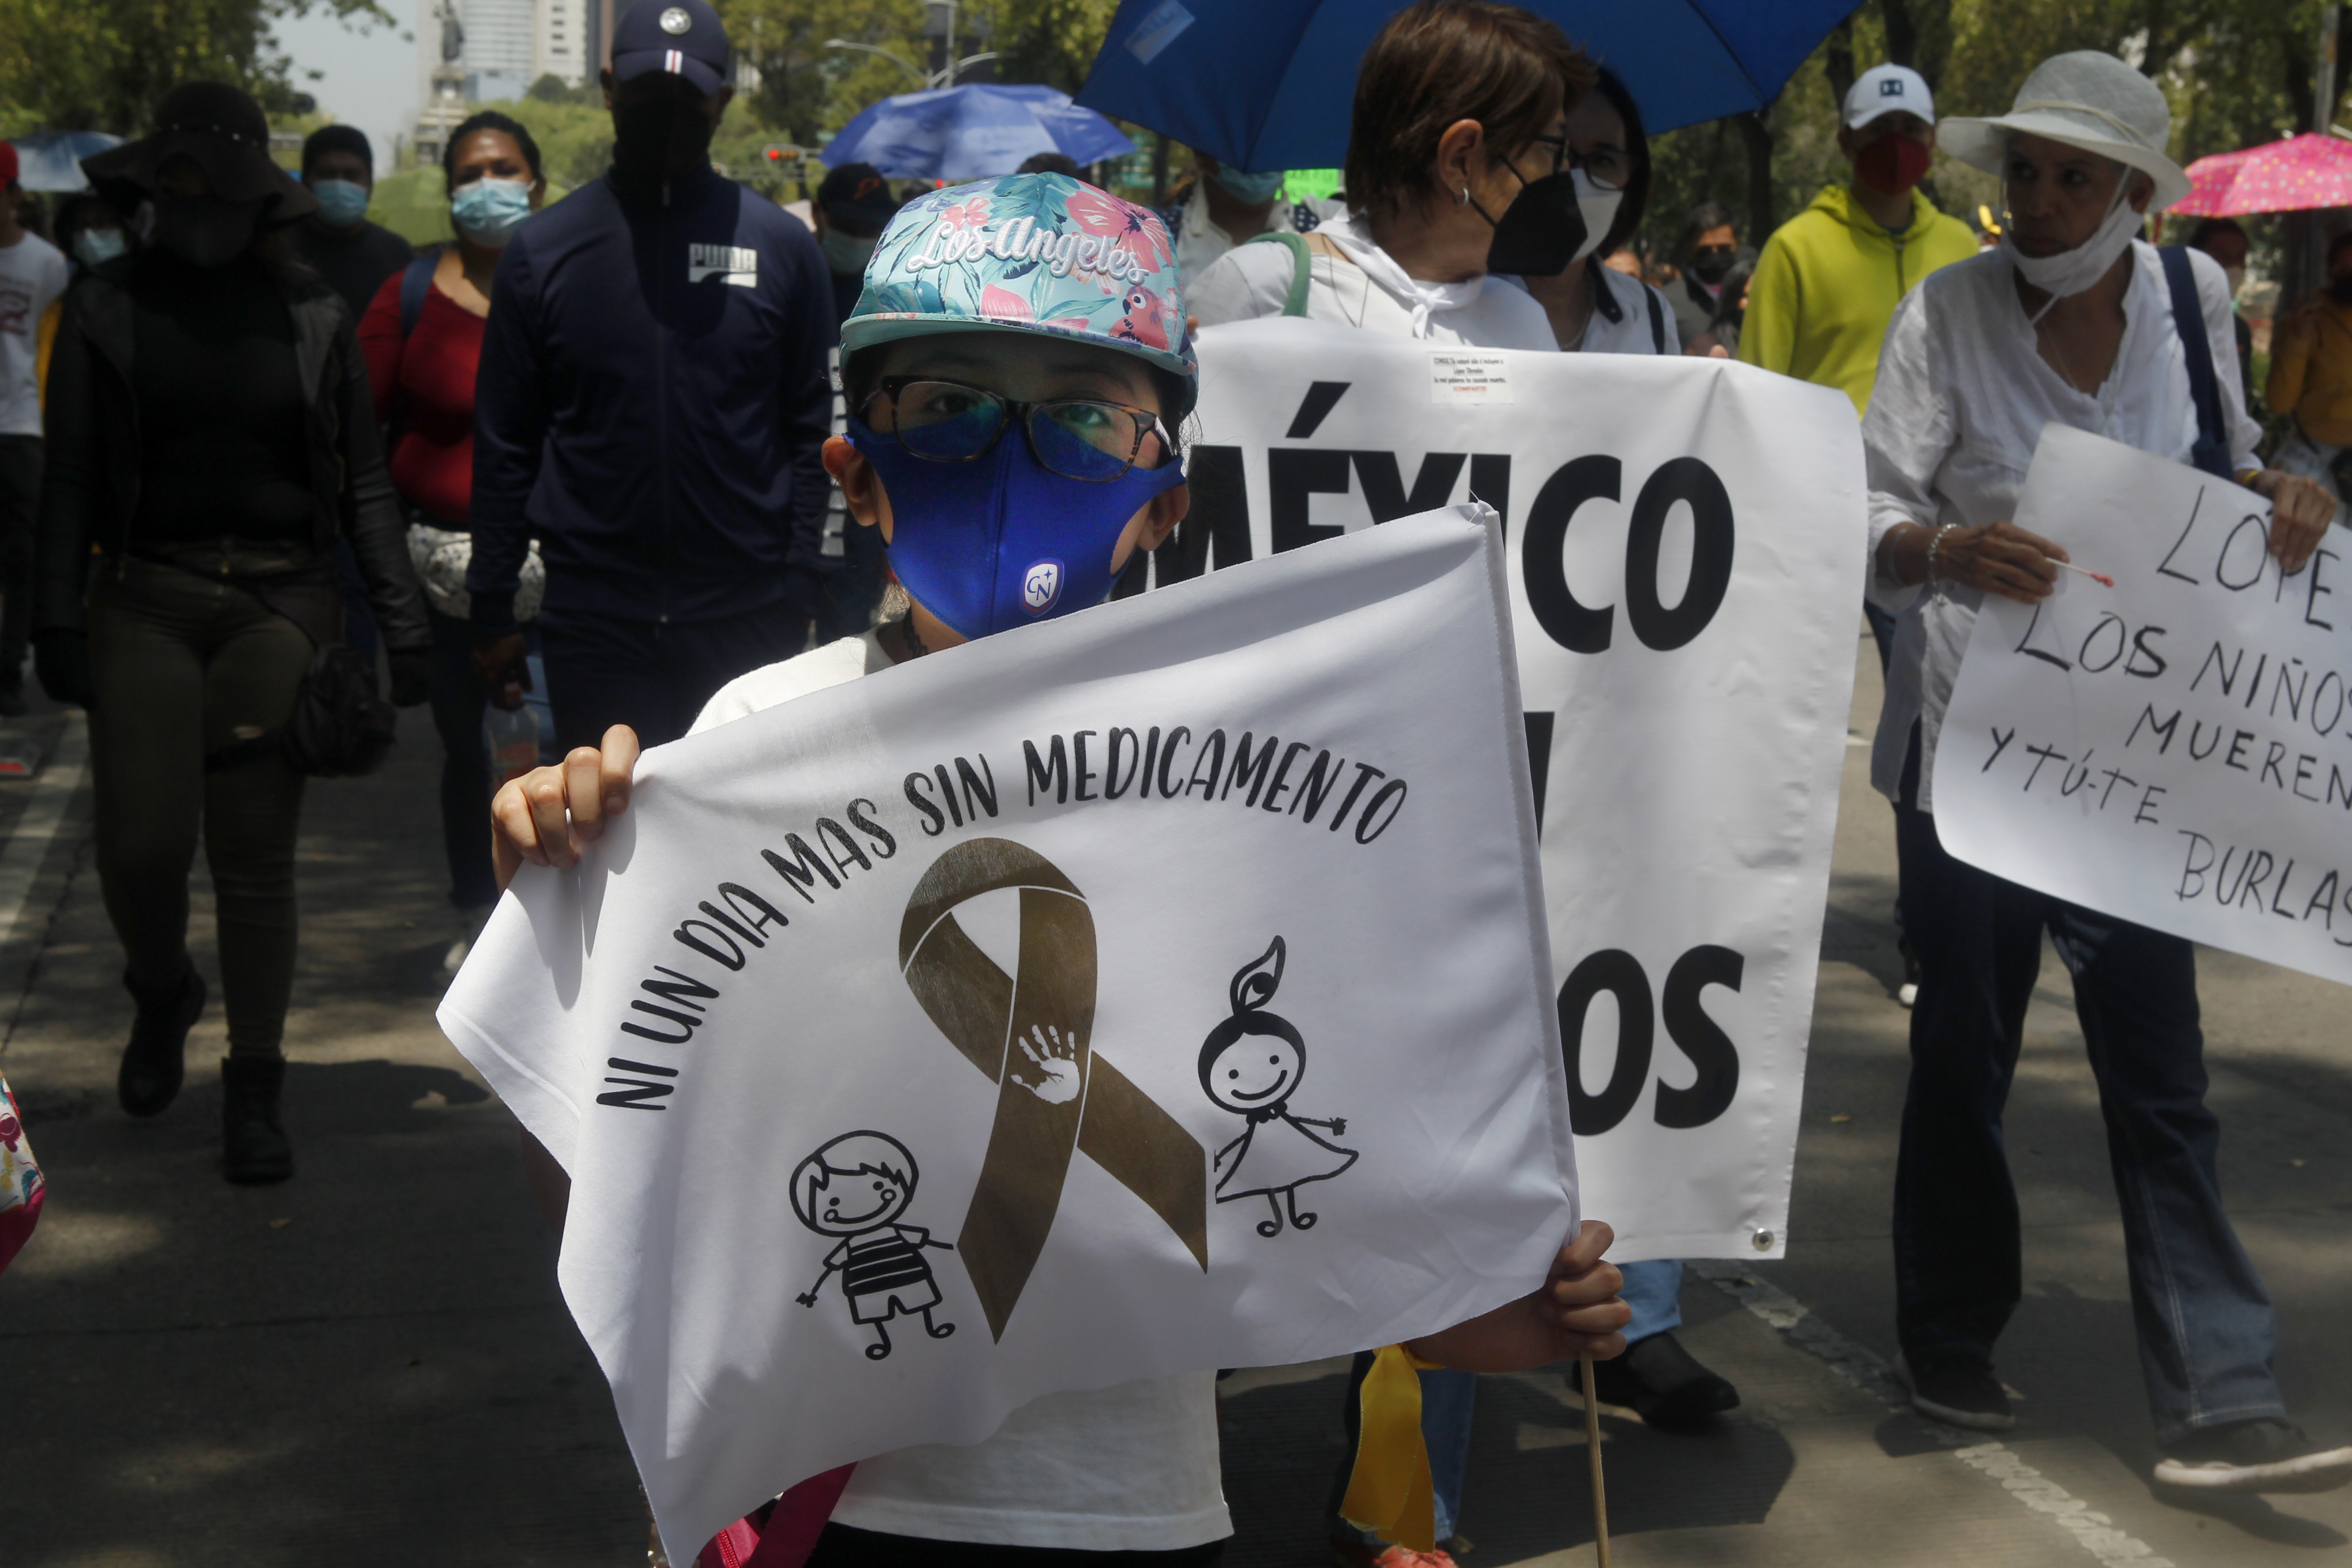 Los padres mostraron su descontento con el presidente López Obrador. Foto: Karina Herández / Infobae